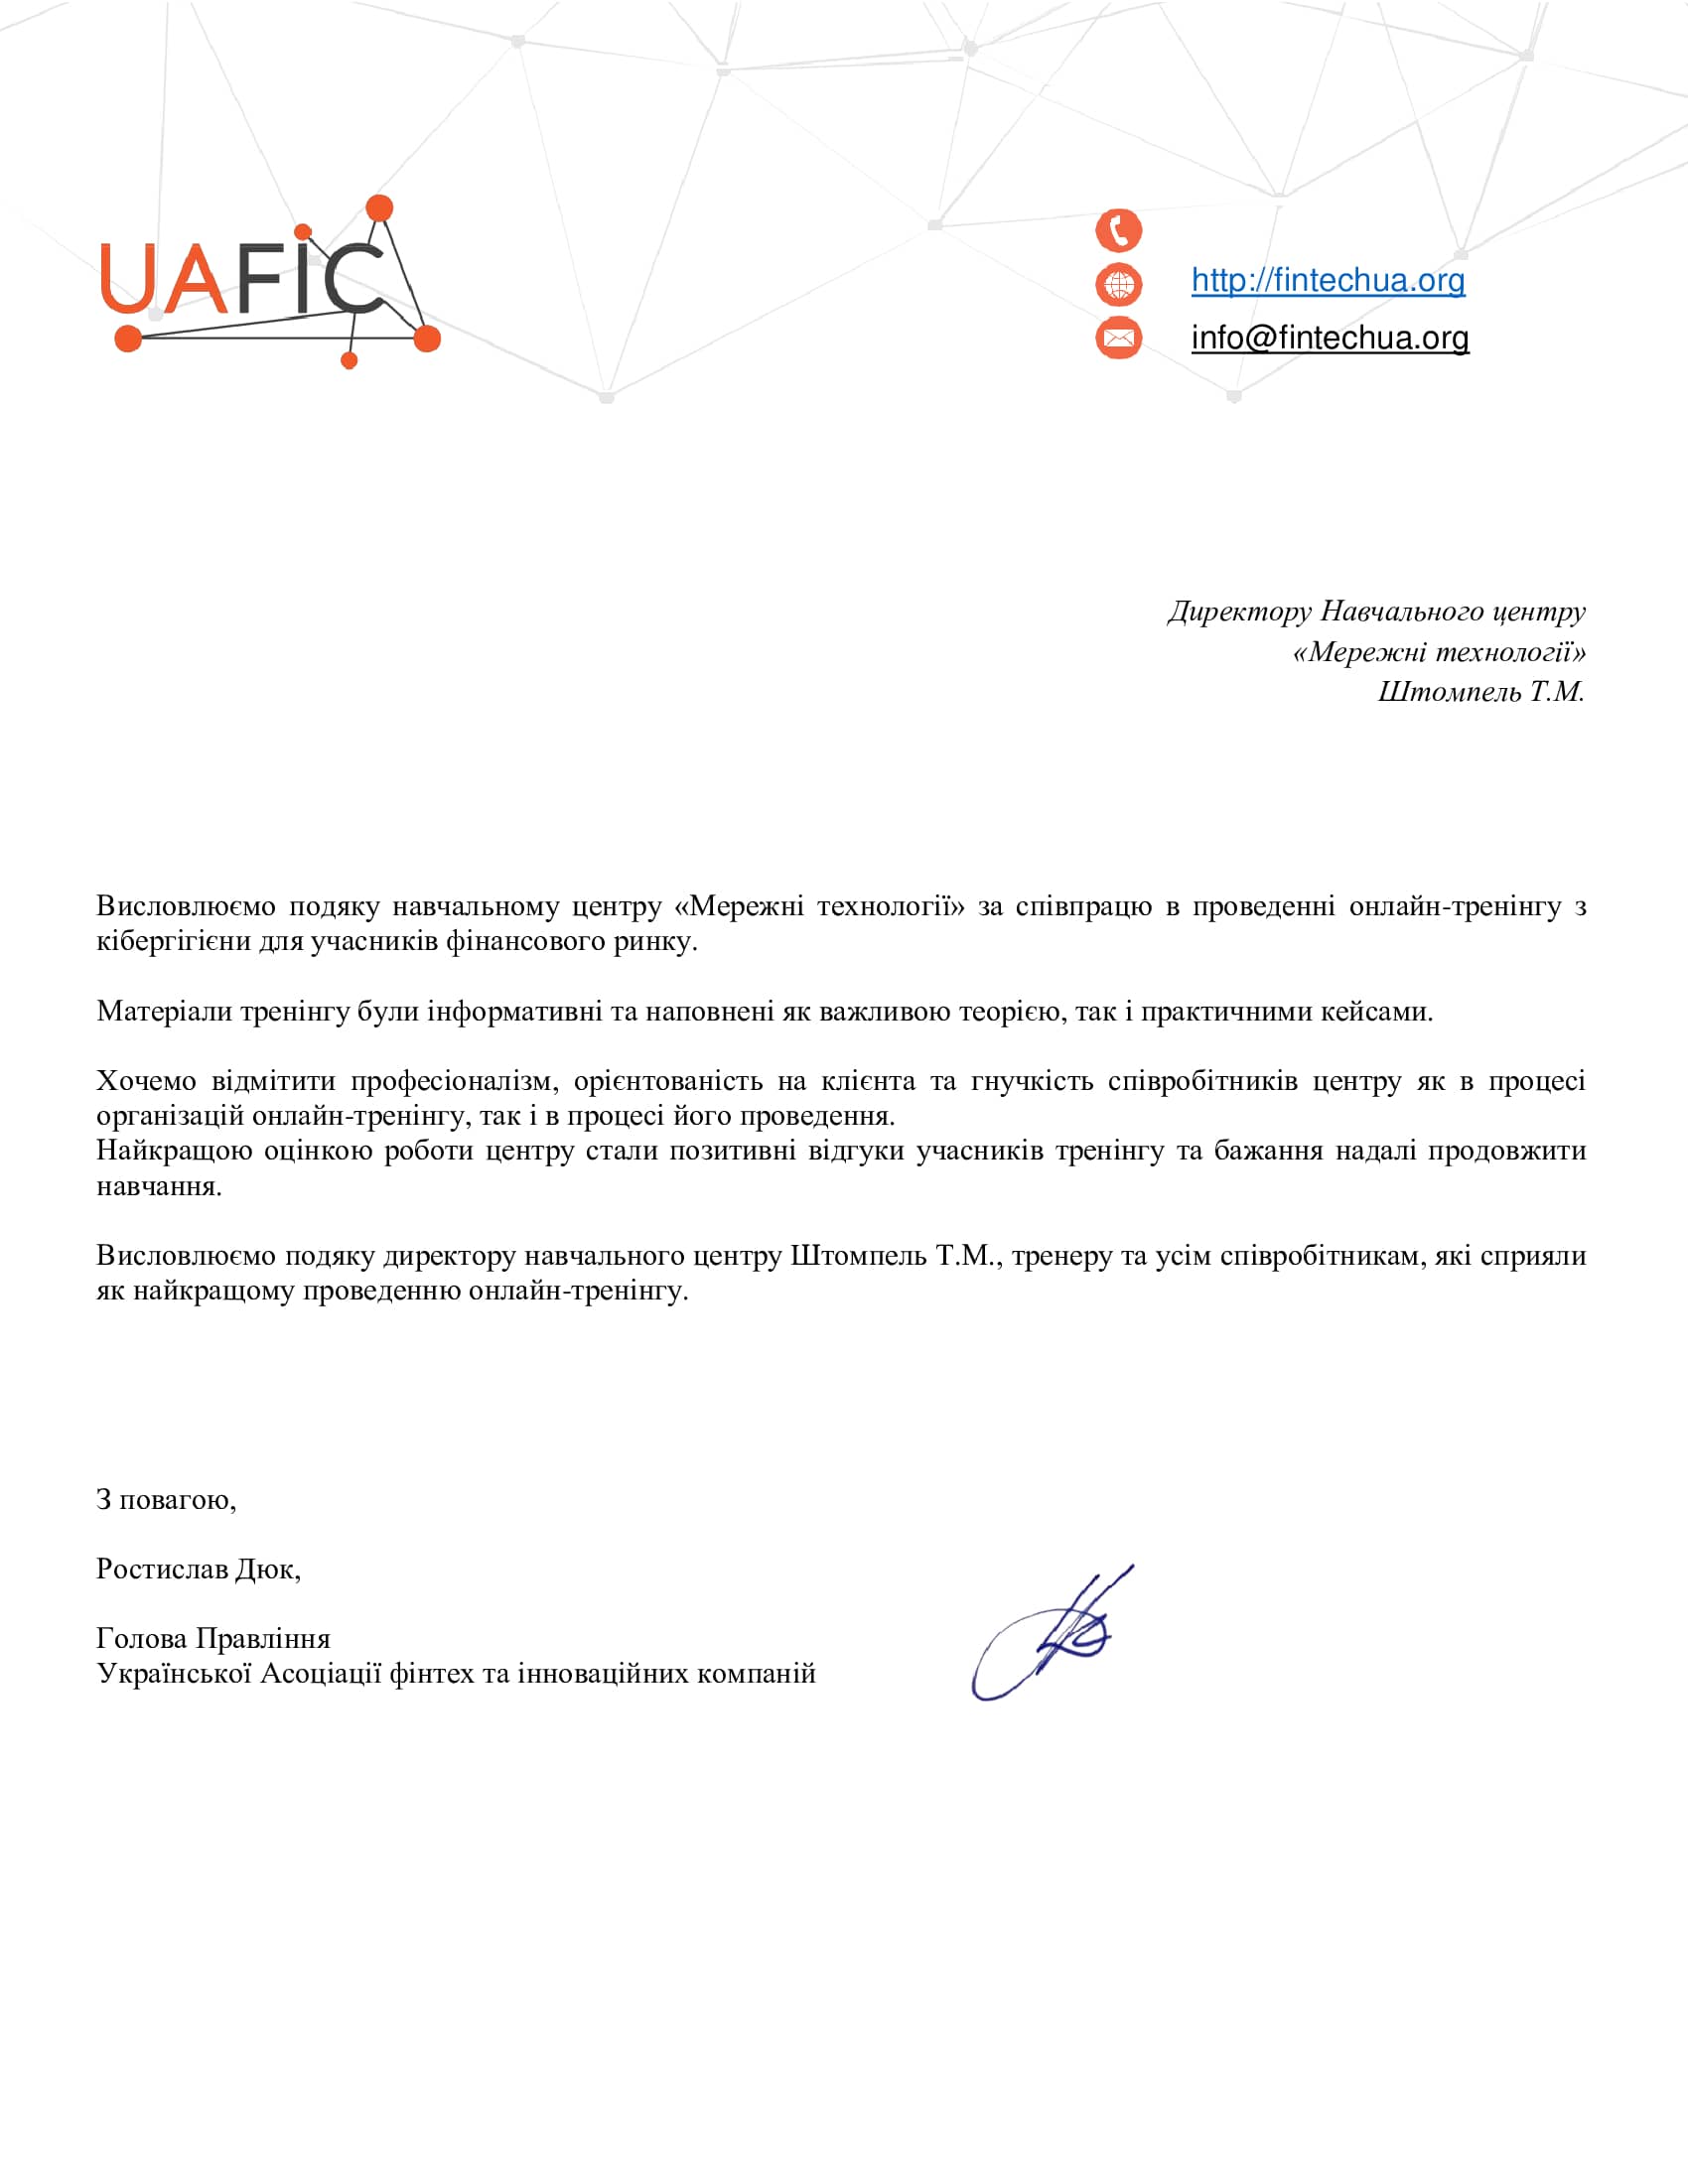 Отзыв UAFIC - FinTech Ukraine об УЦ Сетевые Технологии